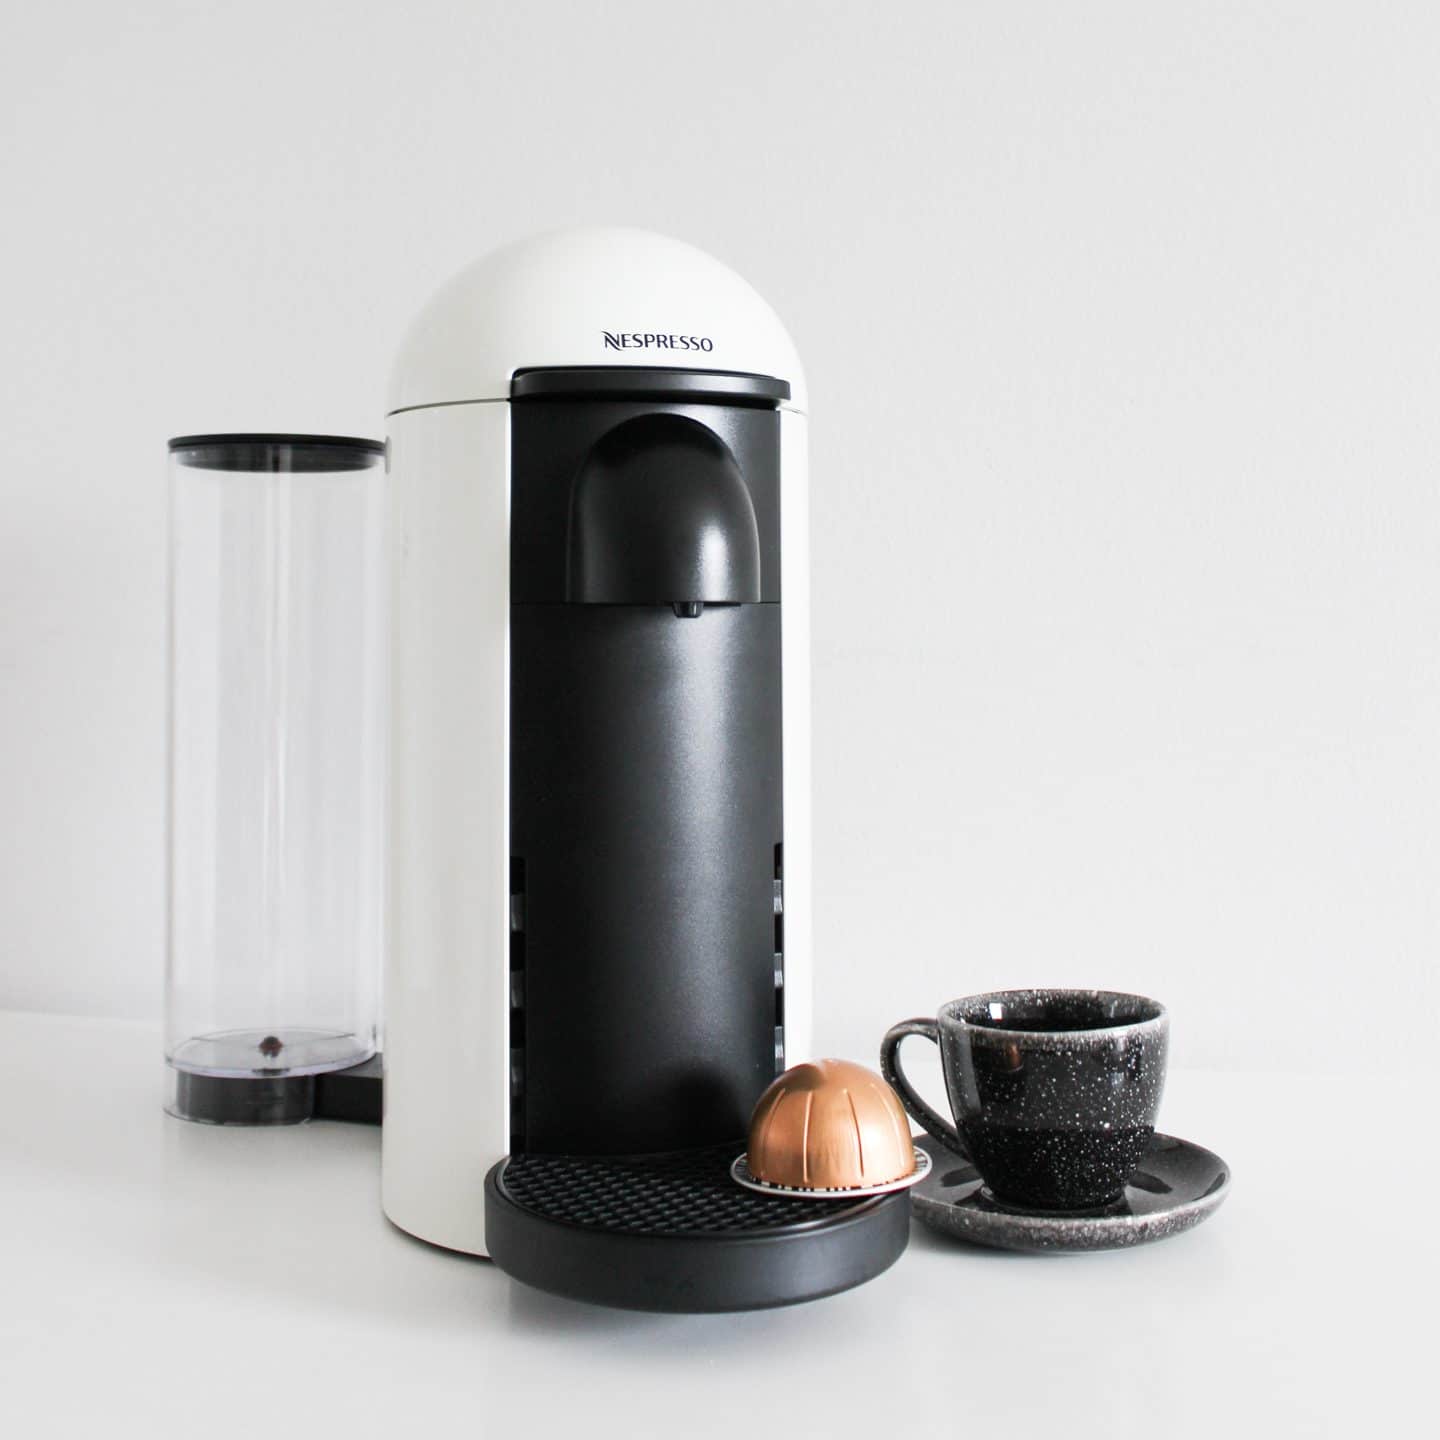 Nespresso Vertuo Plus Coffee Machine